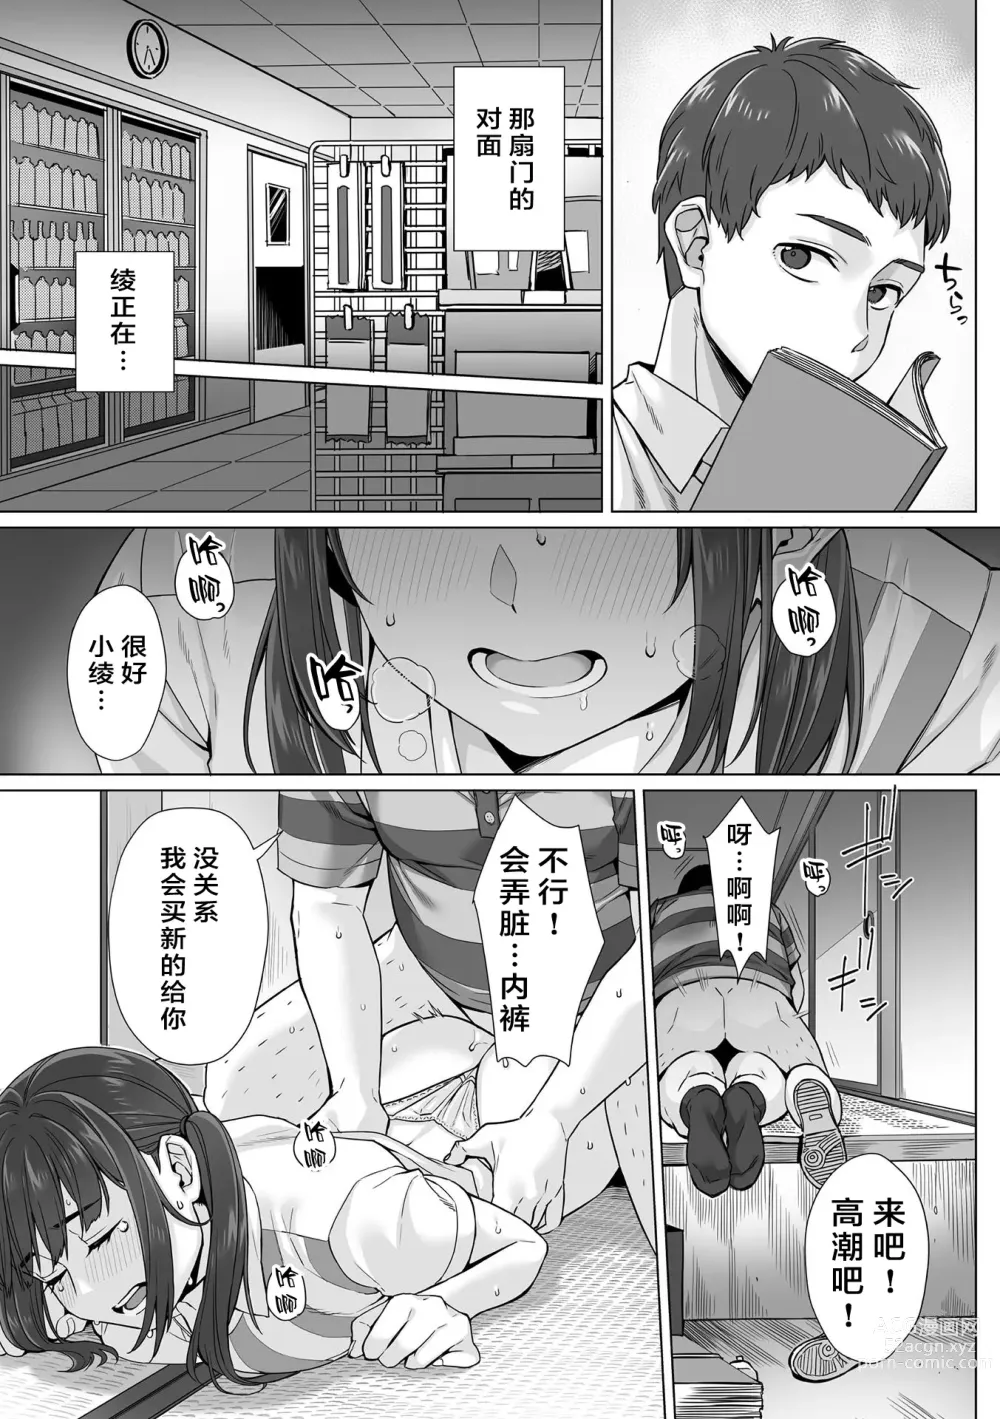 Page 5 of manga Junboku Joshikousei wa Oyaji Iro ni Somerarete Comic Ban Ch. 3